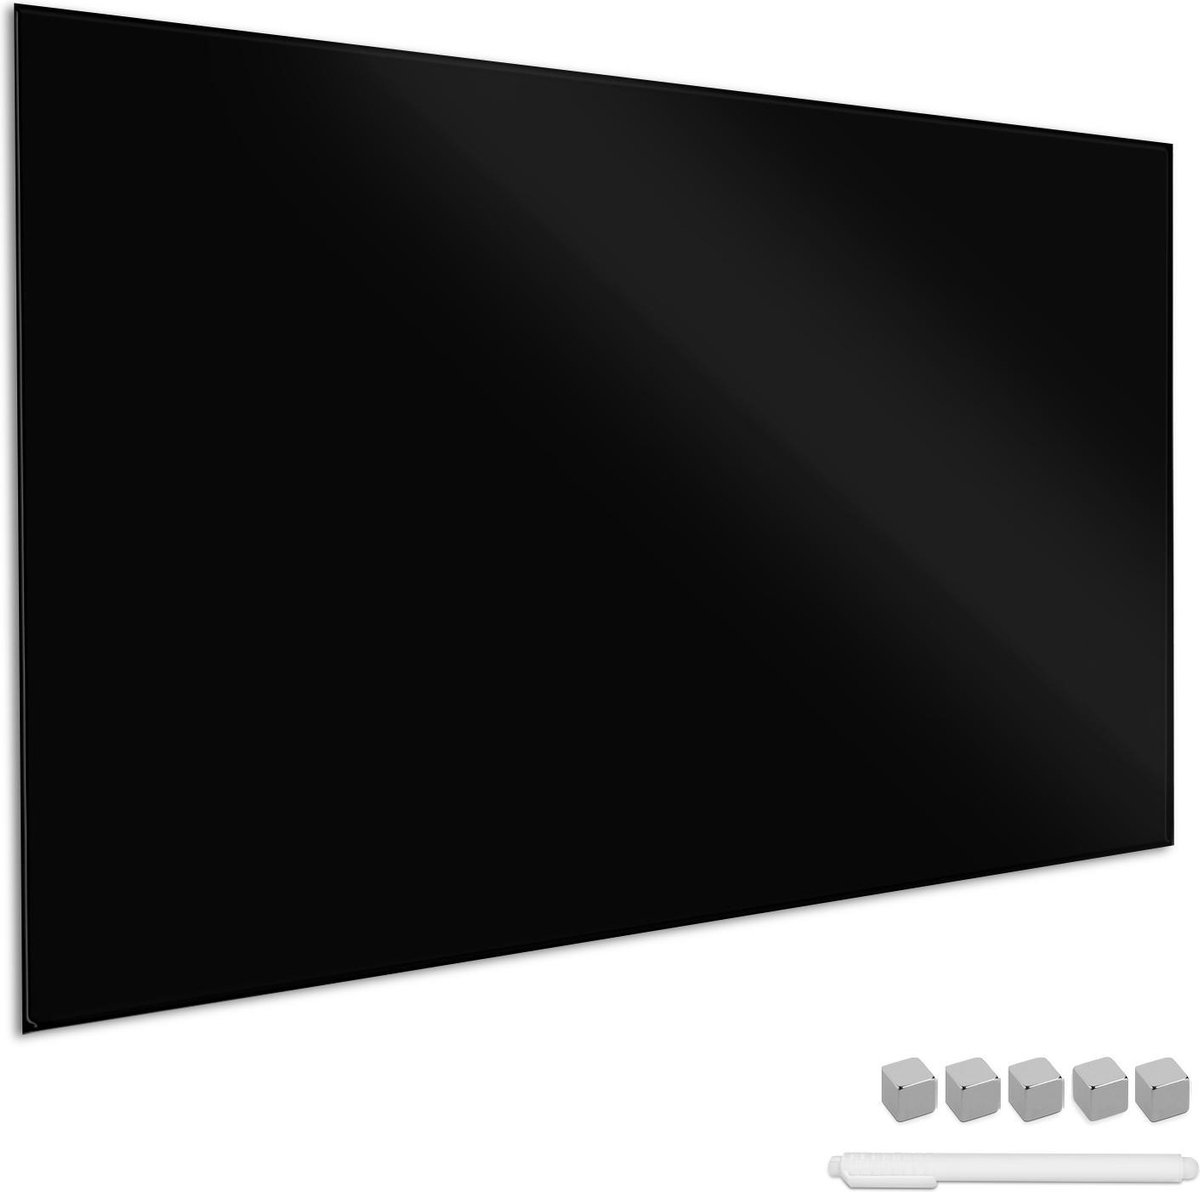 Navaris glassboard - Magnetisch bord voor aan de wand - Memobord van glas - 90 x 60 cm - Magneetbord inclusief magneten en marker - Zwart - Navaris